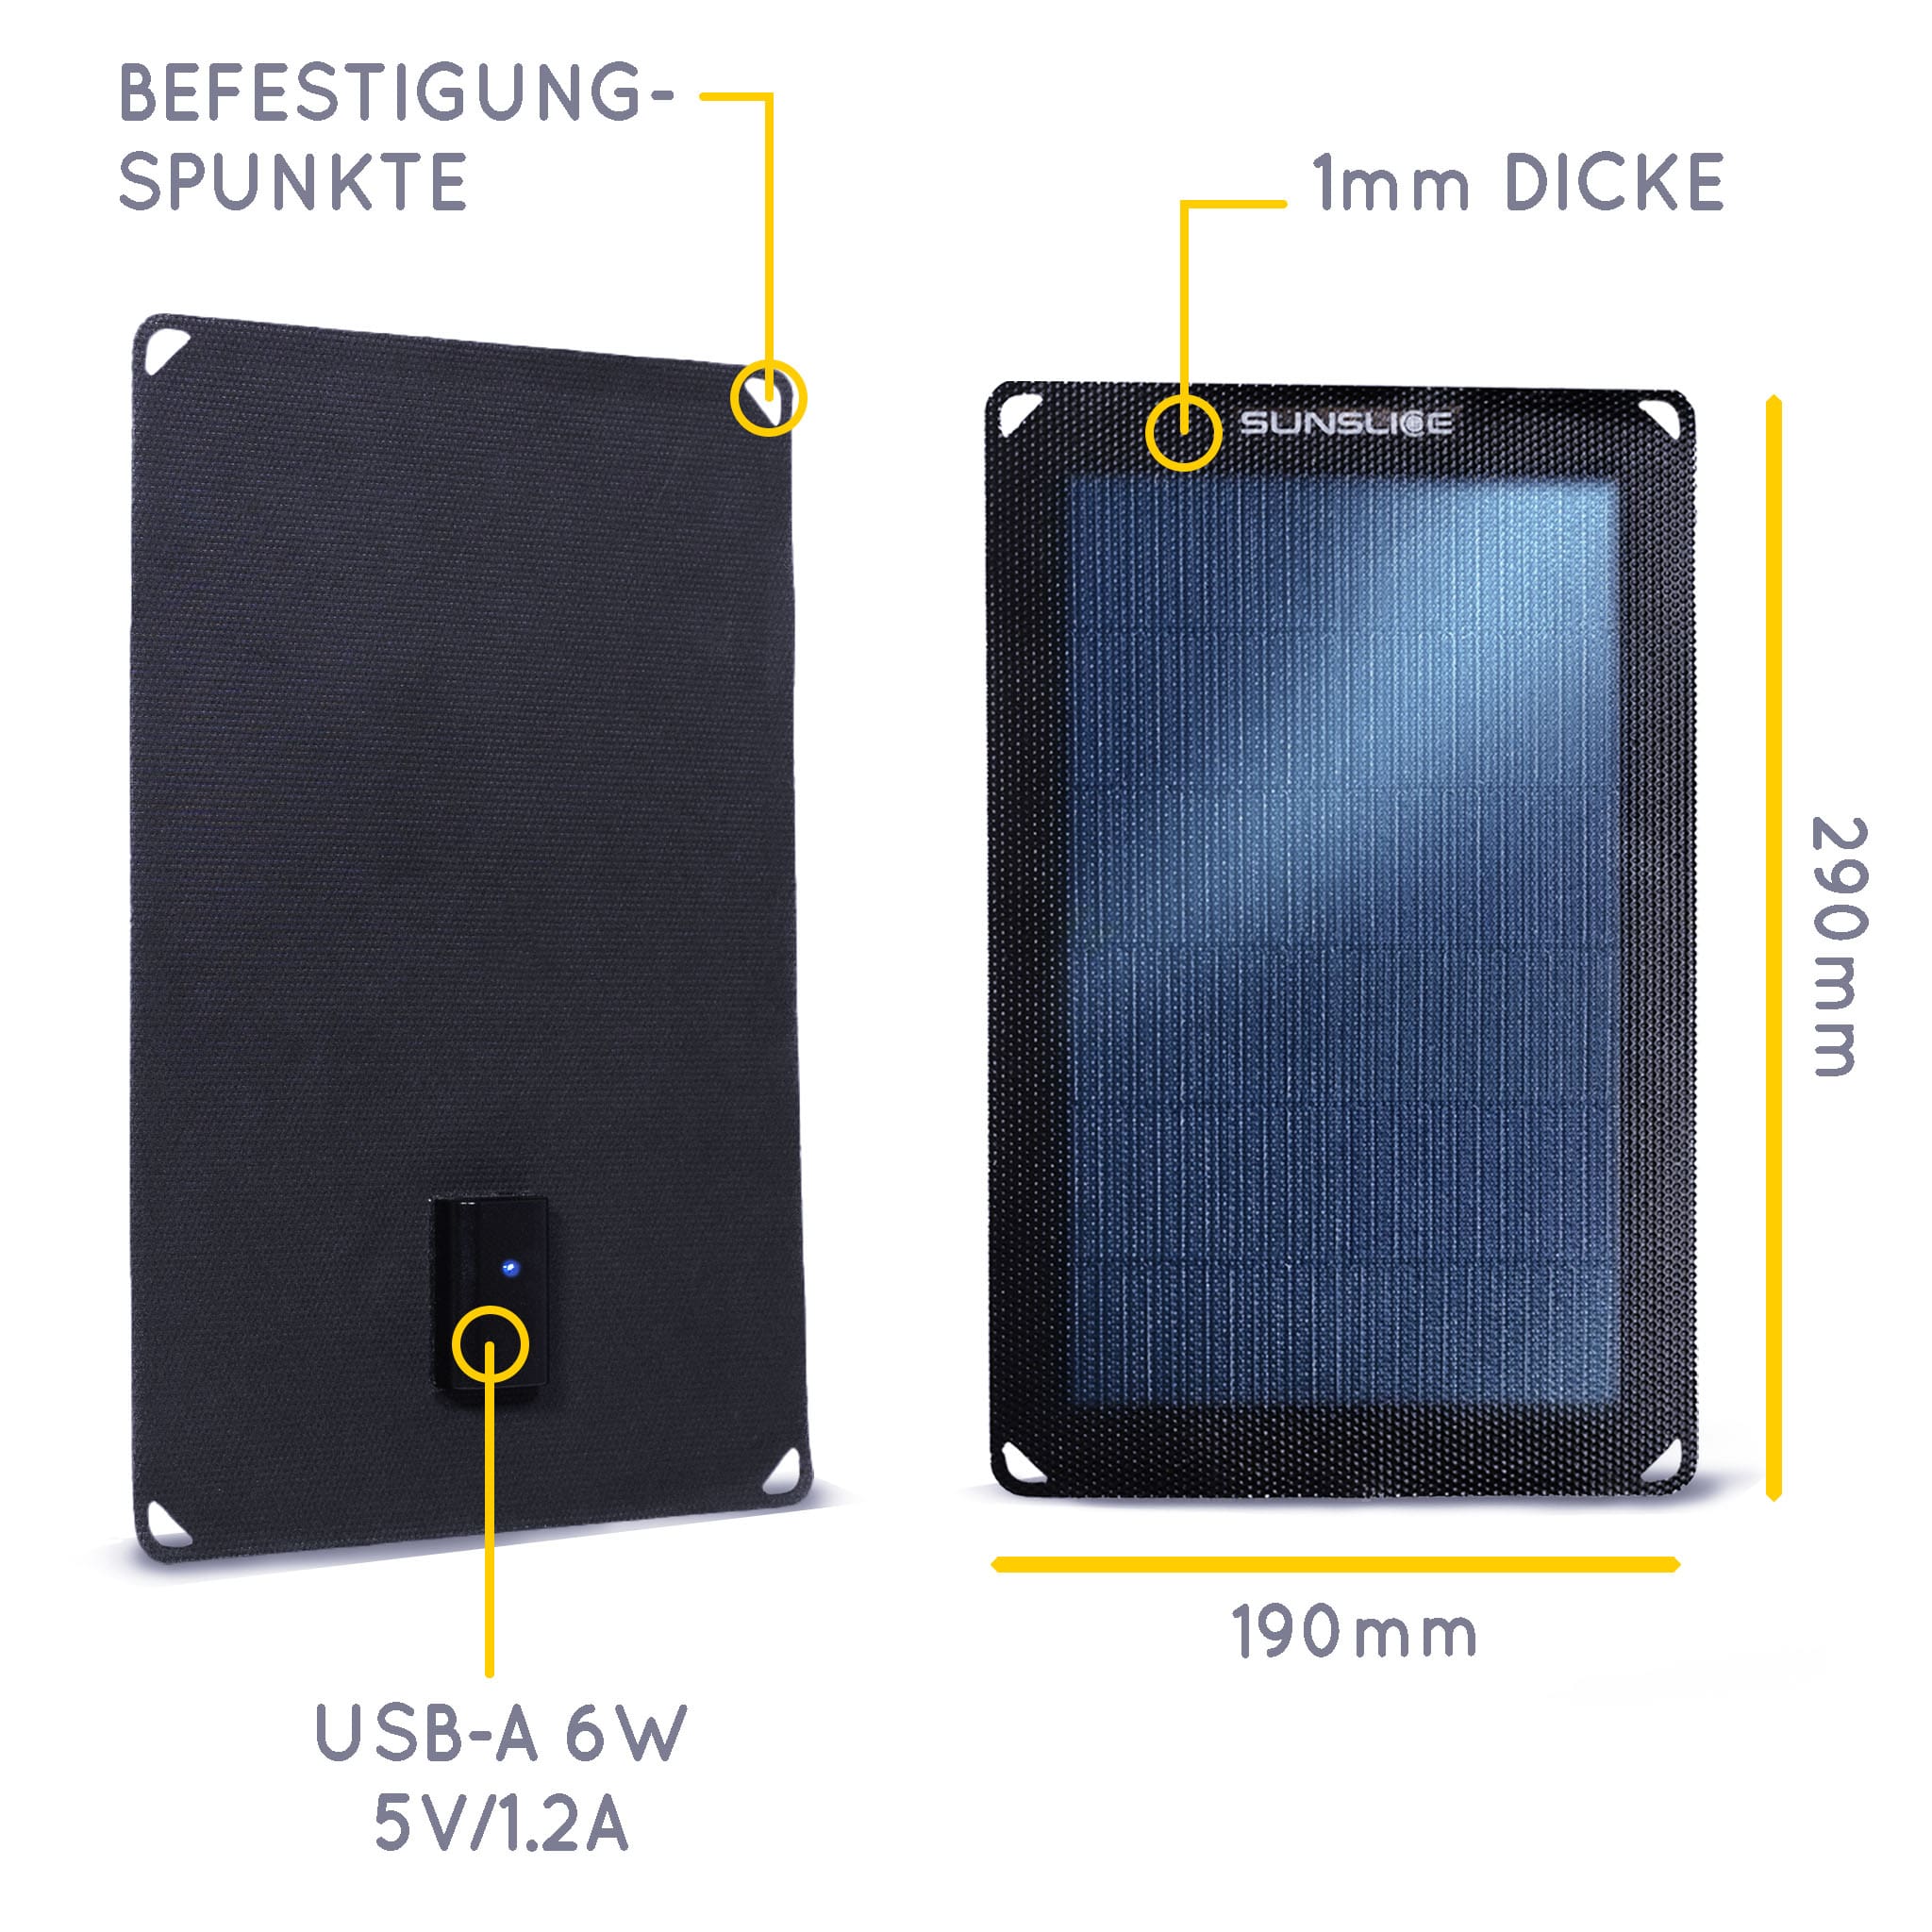 tragbares Solarpanel für Camping mit einem einzigen Panel; Größe: 290mm, 190 mm, 1 mm und ein USB-A 6W 